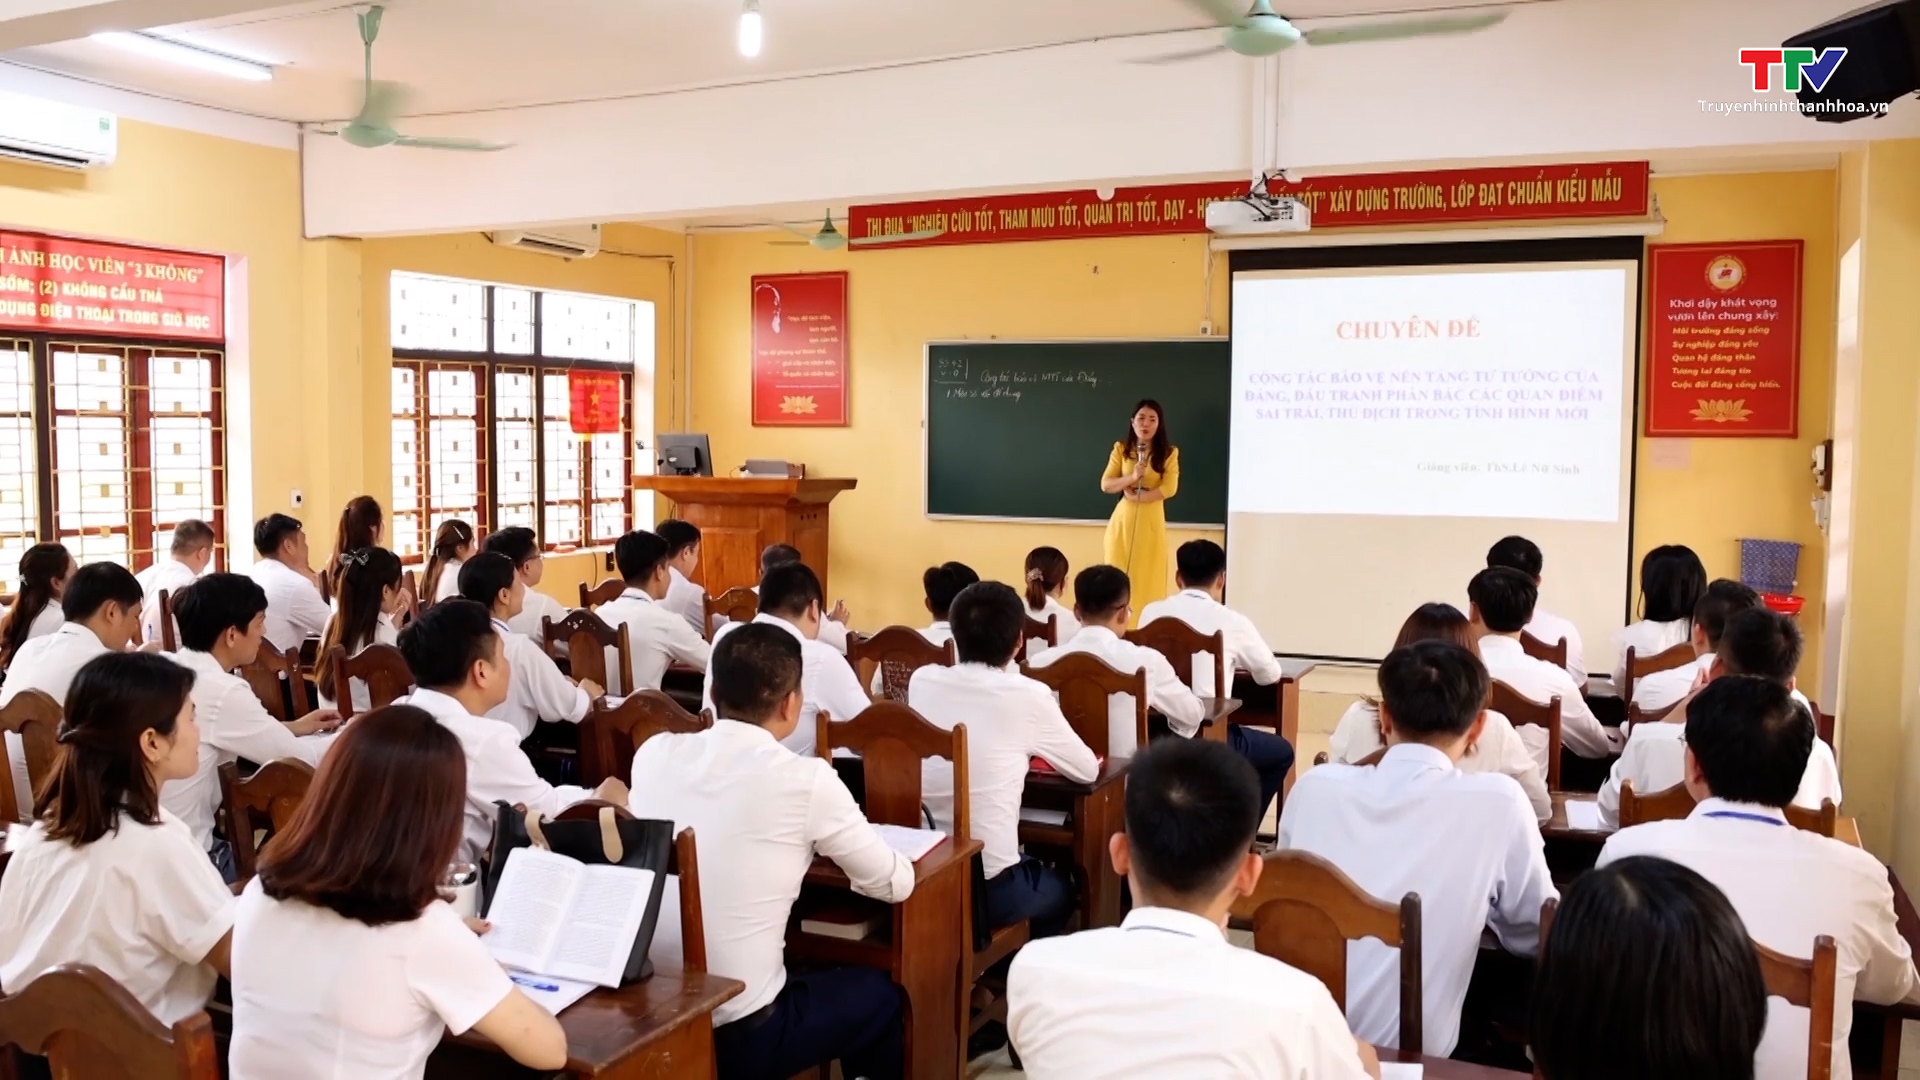 Hành trình xây dựng Trường Chính trị tỉnh Thanh Hóa đạt chuẩn - Ảnh 7.